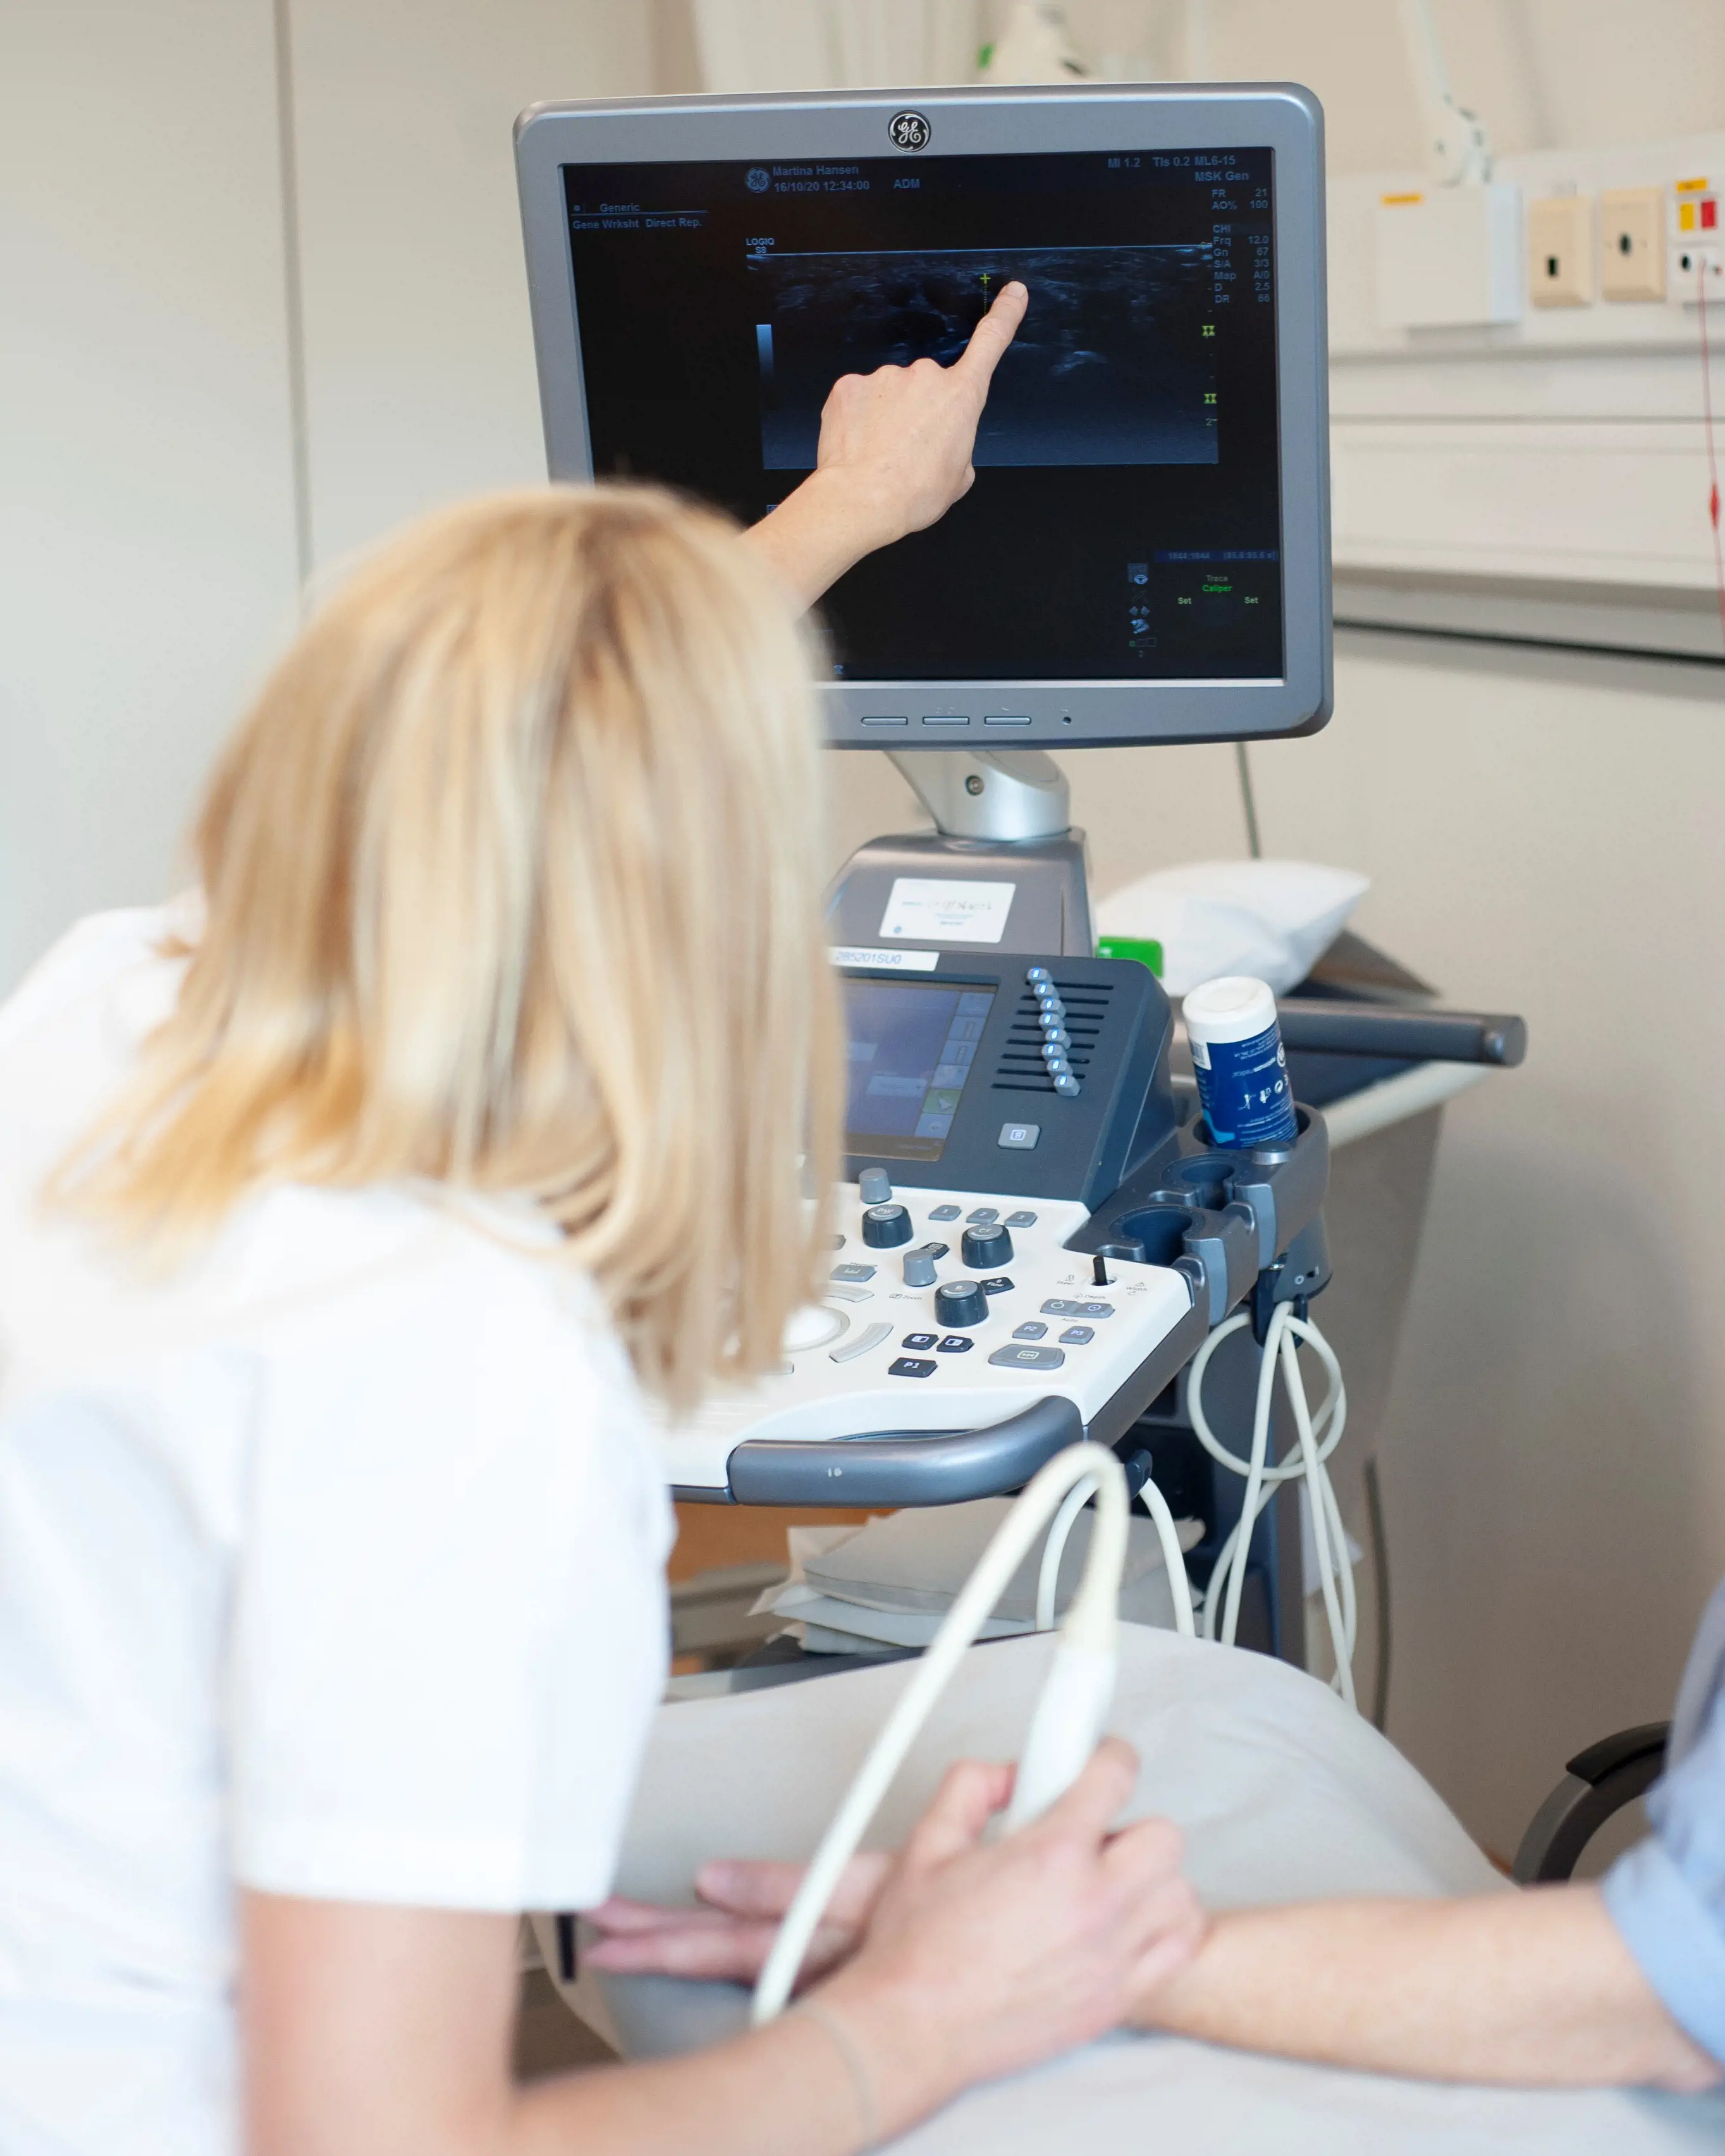 Revmatolog som viser hva hun der på skjermen under en ultralydundersøkelse.